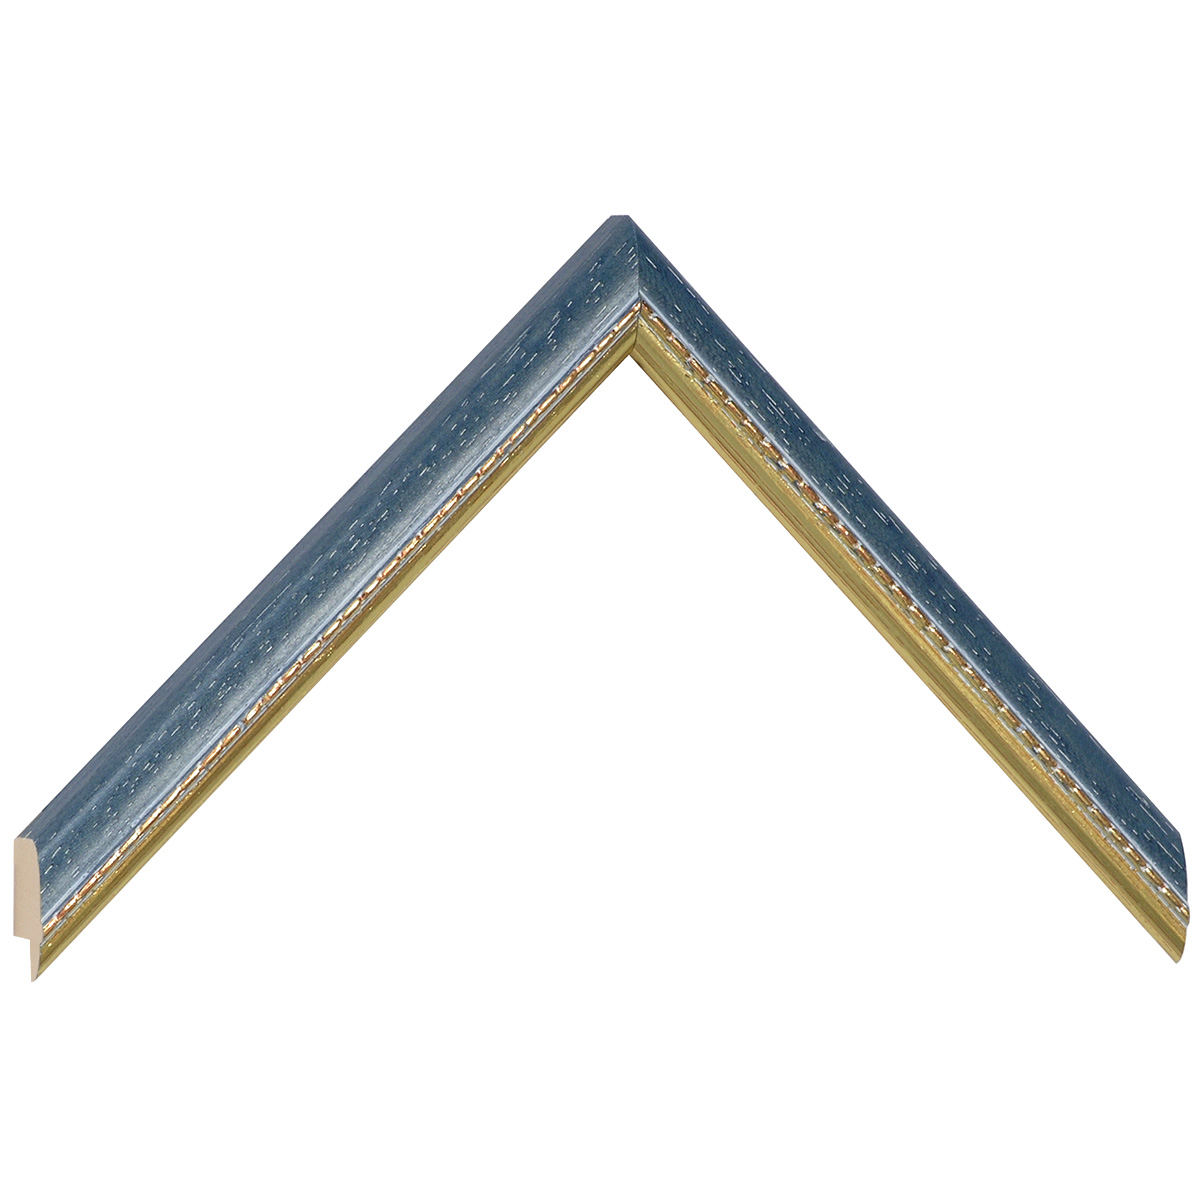 Profil ayous Lățime 17 mm - albastru cu decorațiuni aurii în relief - Mostră